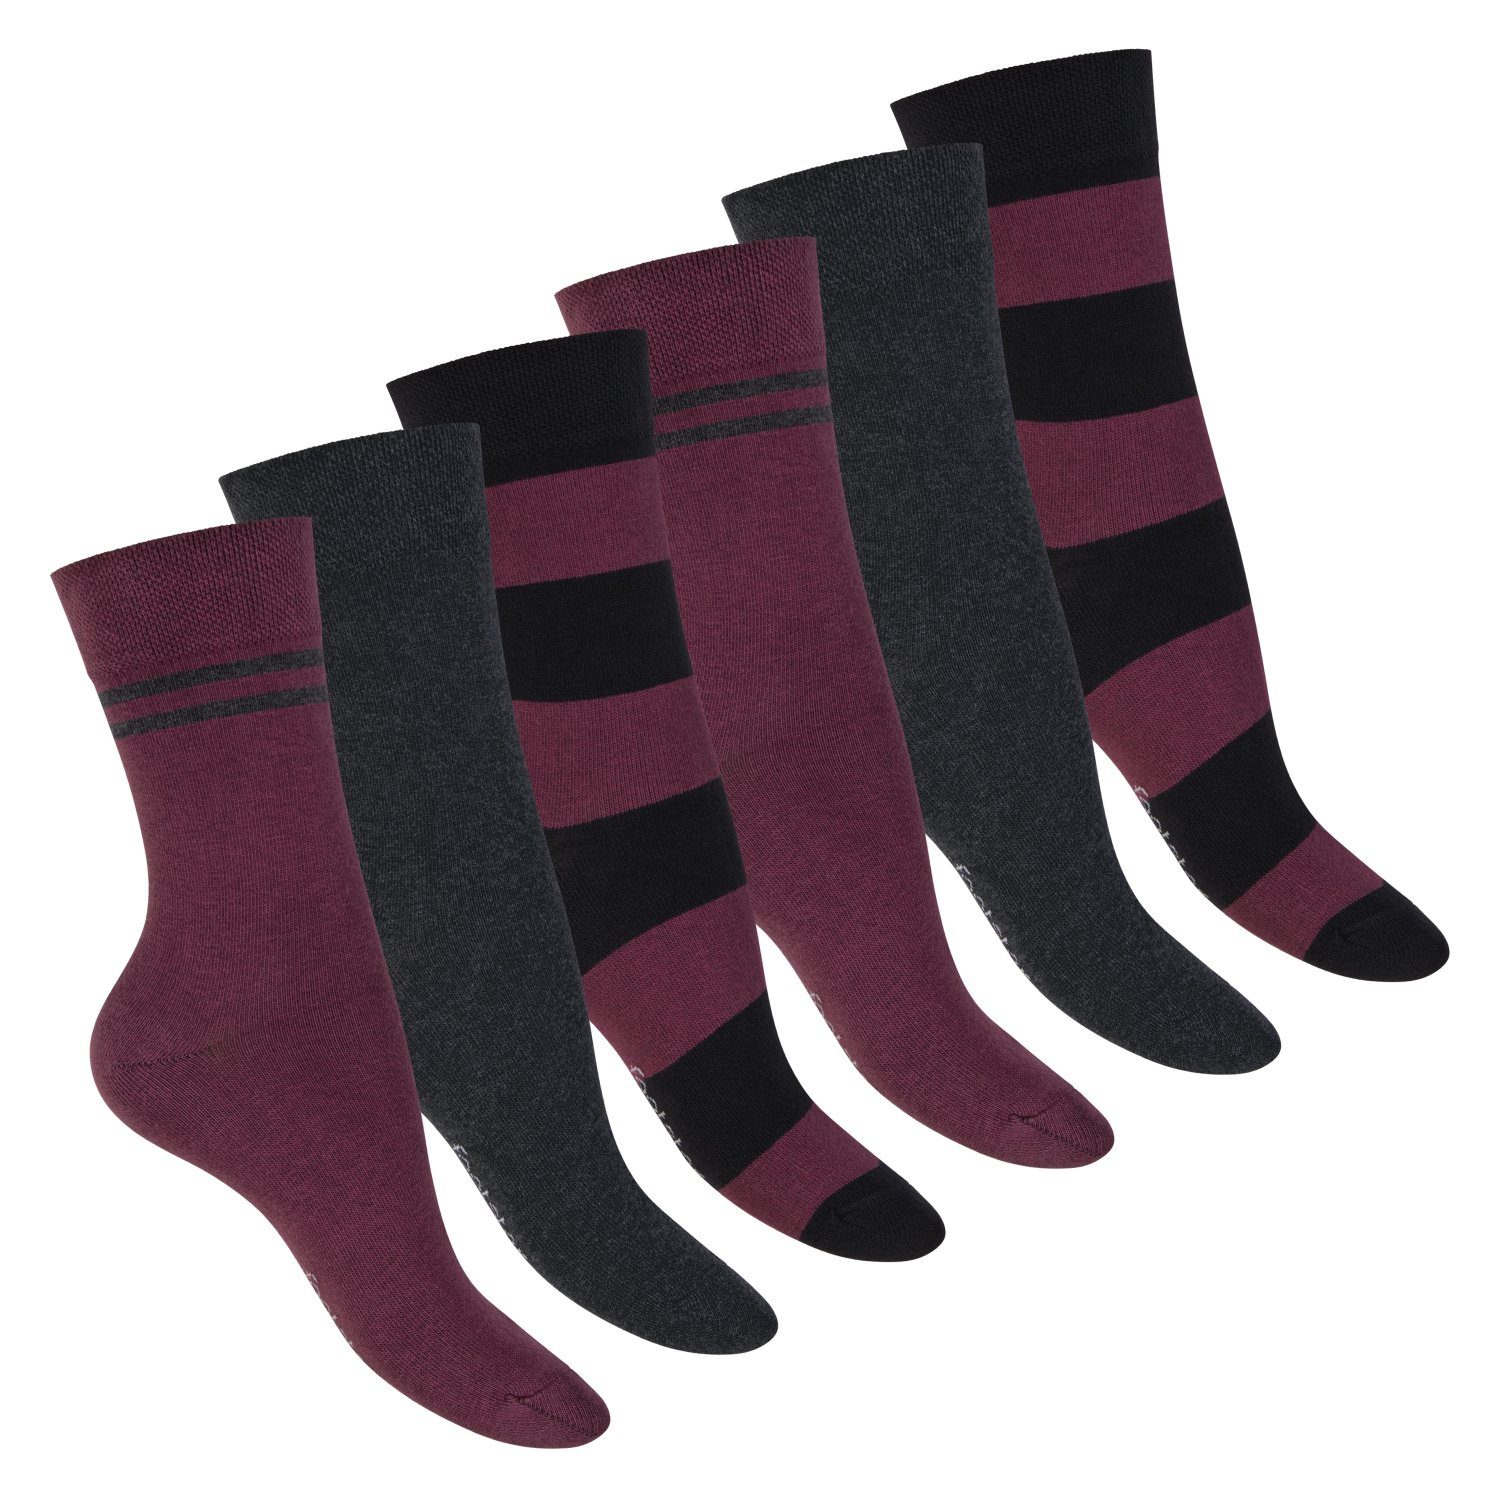 Footstar Basicsocken Damen Ringel Socken (6 Paar) Bordeaux